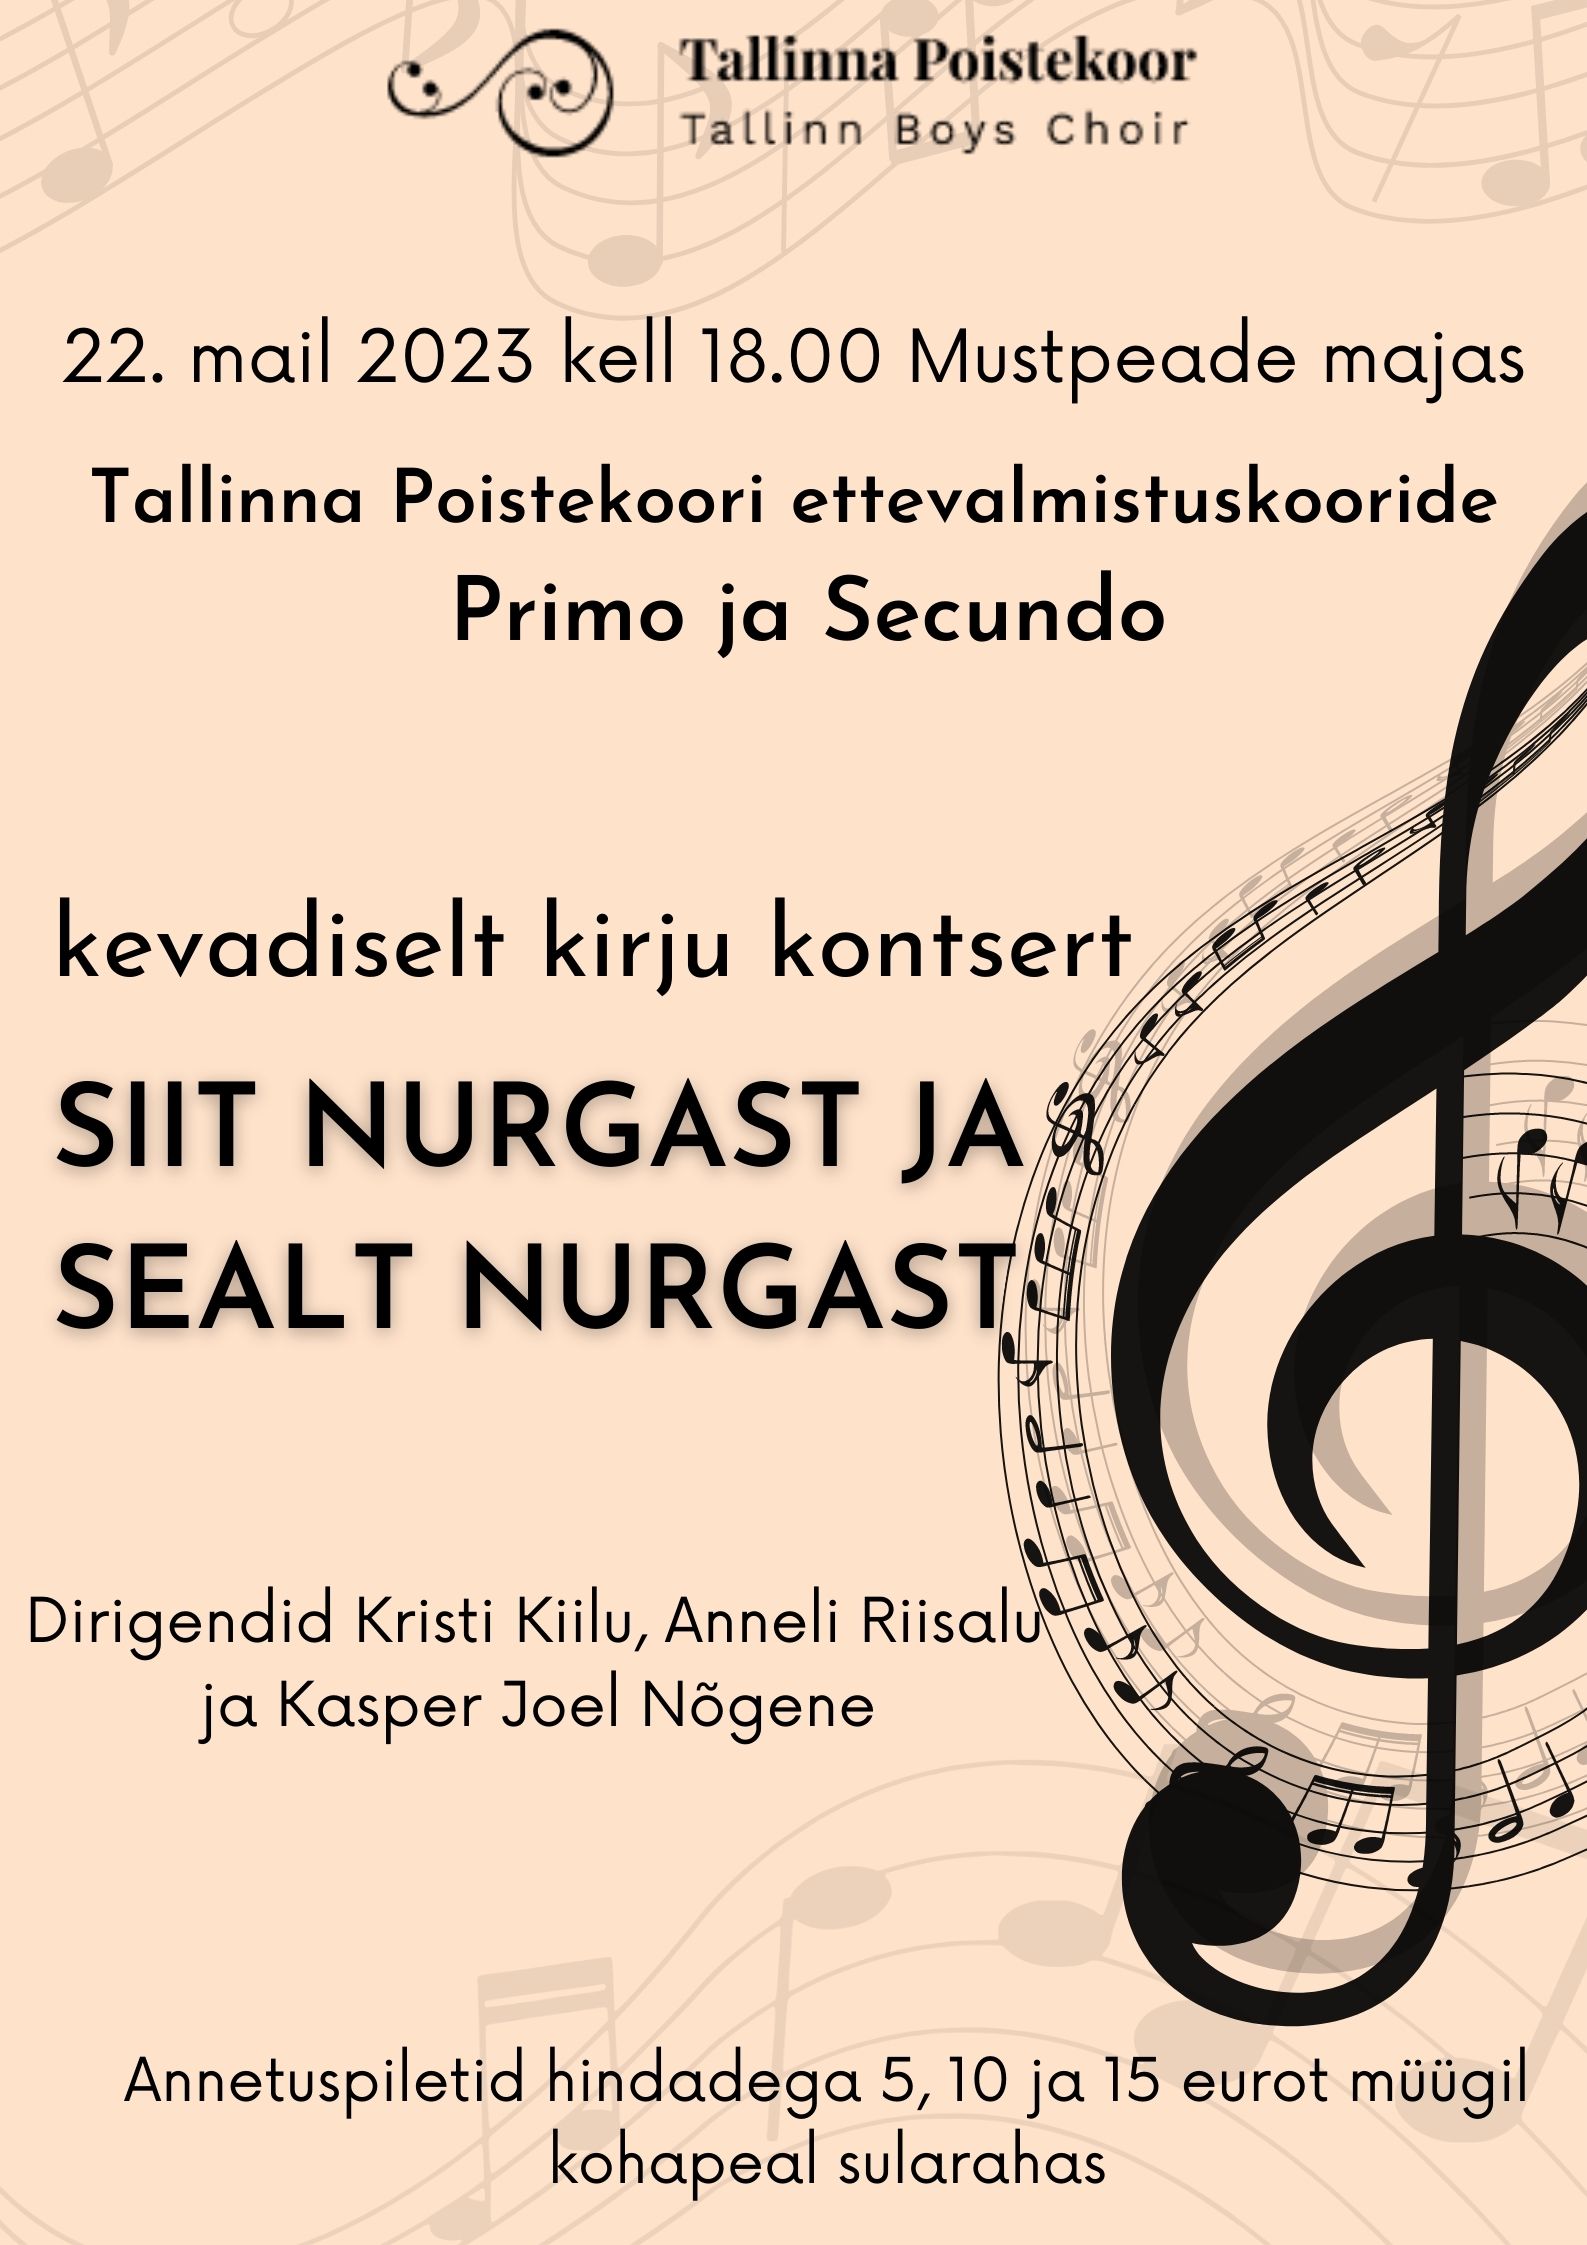 Tallinna Poistekoori ettevalmistuskooride Primo ja Secundo kontsert „Siit nurgast ja sealt nurgast“